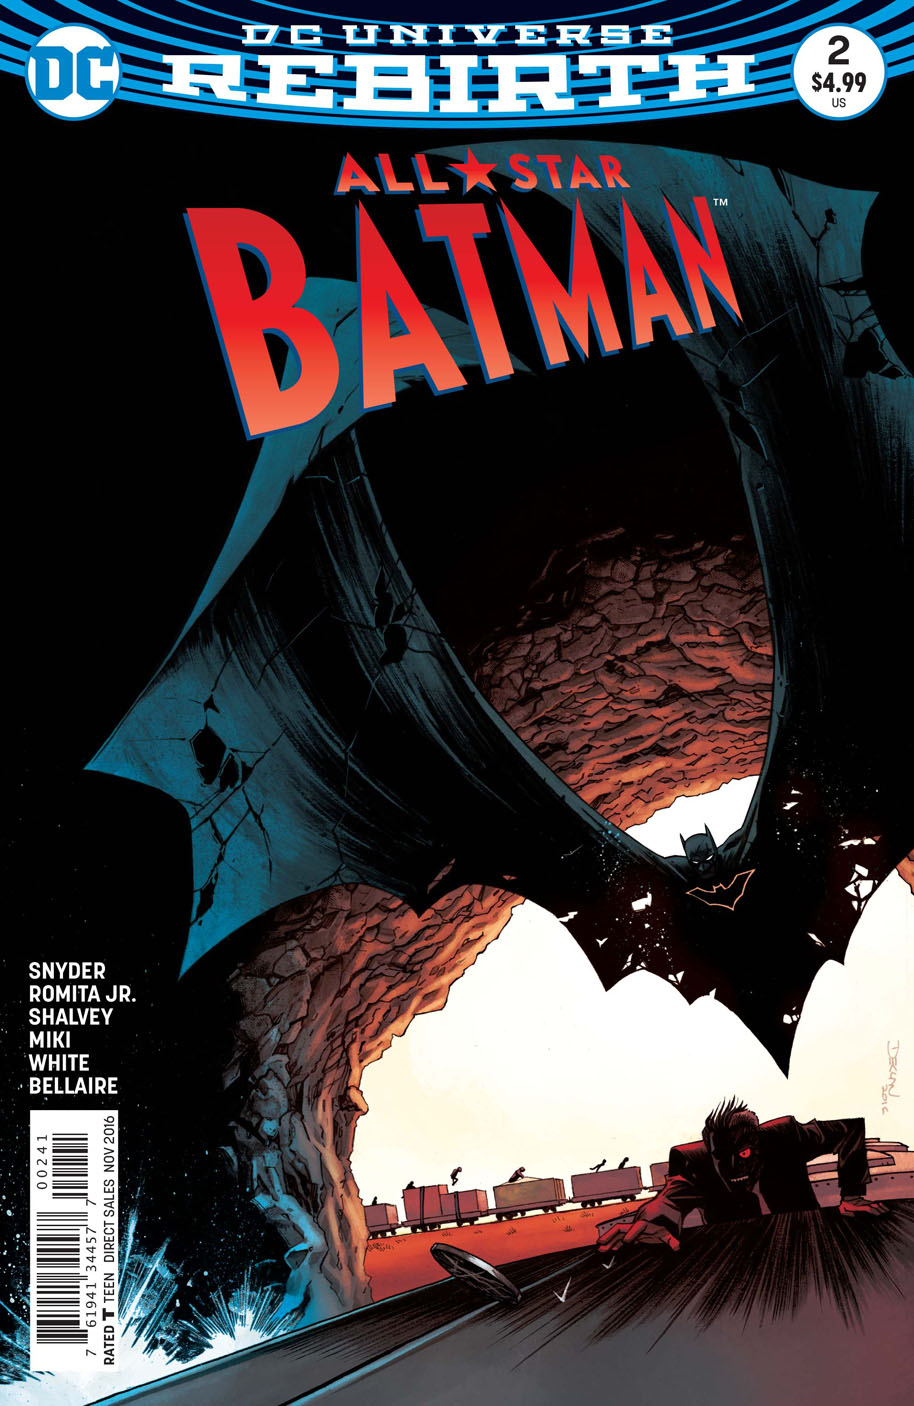 All-Star Batman Vol 1 2 | DC Database | Fandom